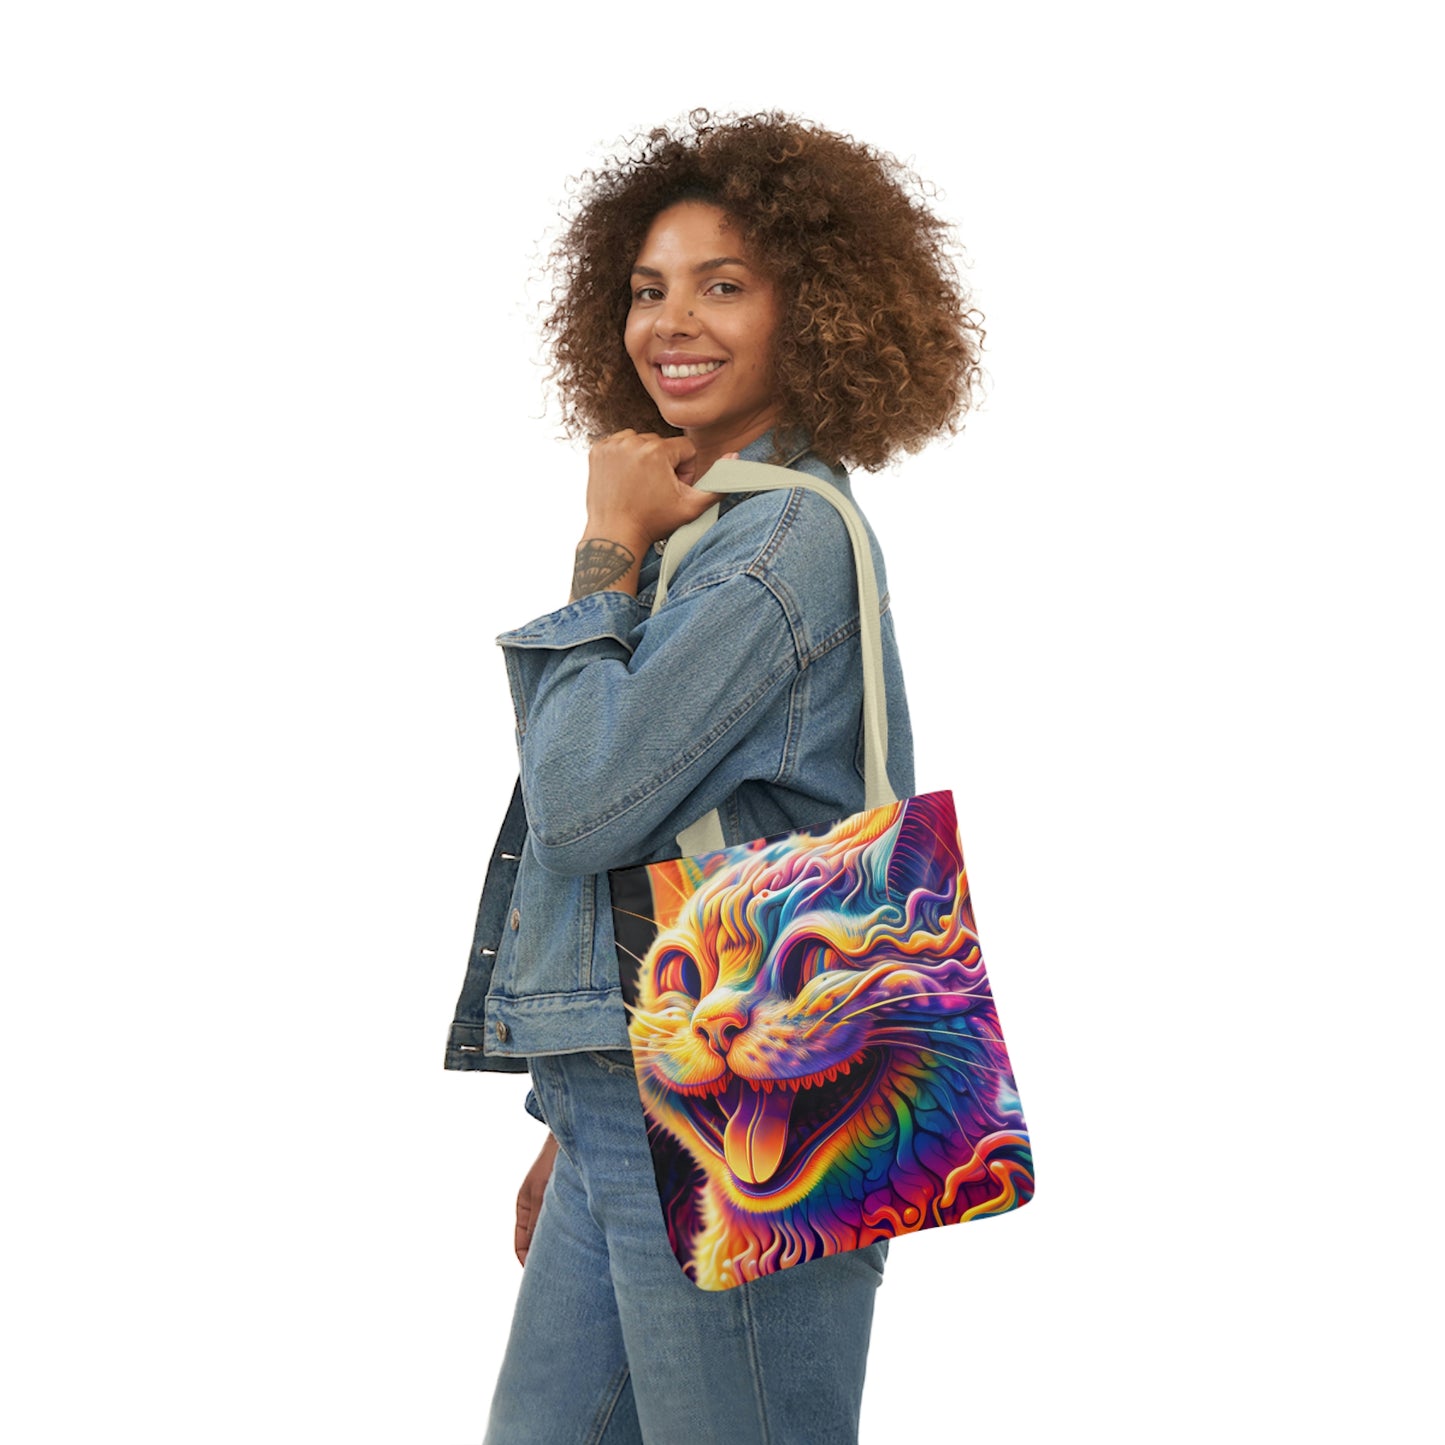 Acid Cat Canvas Tote Bag